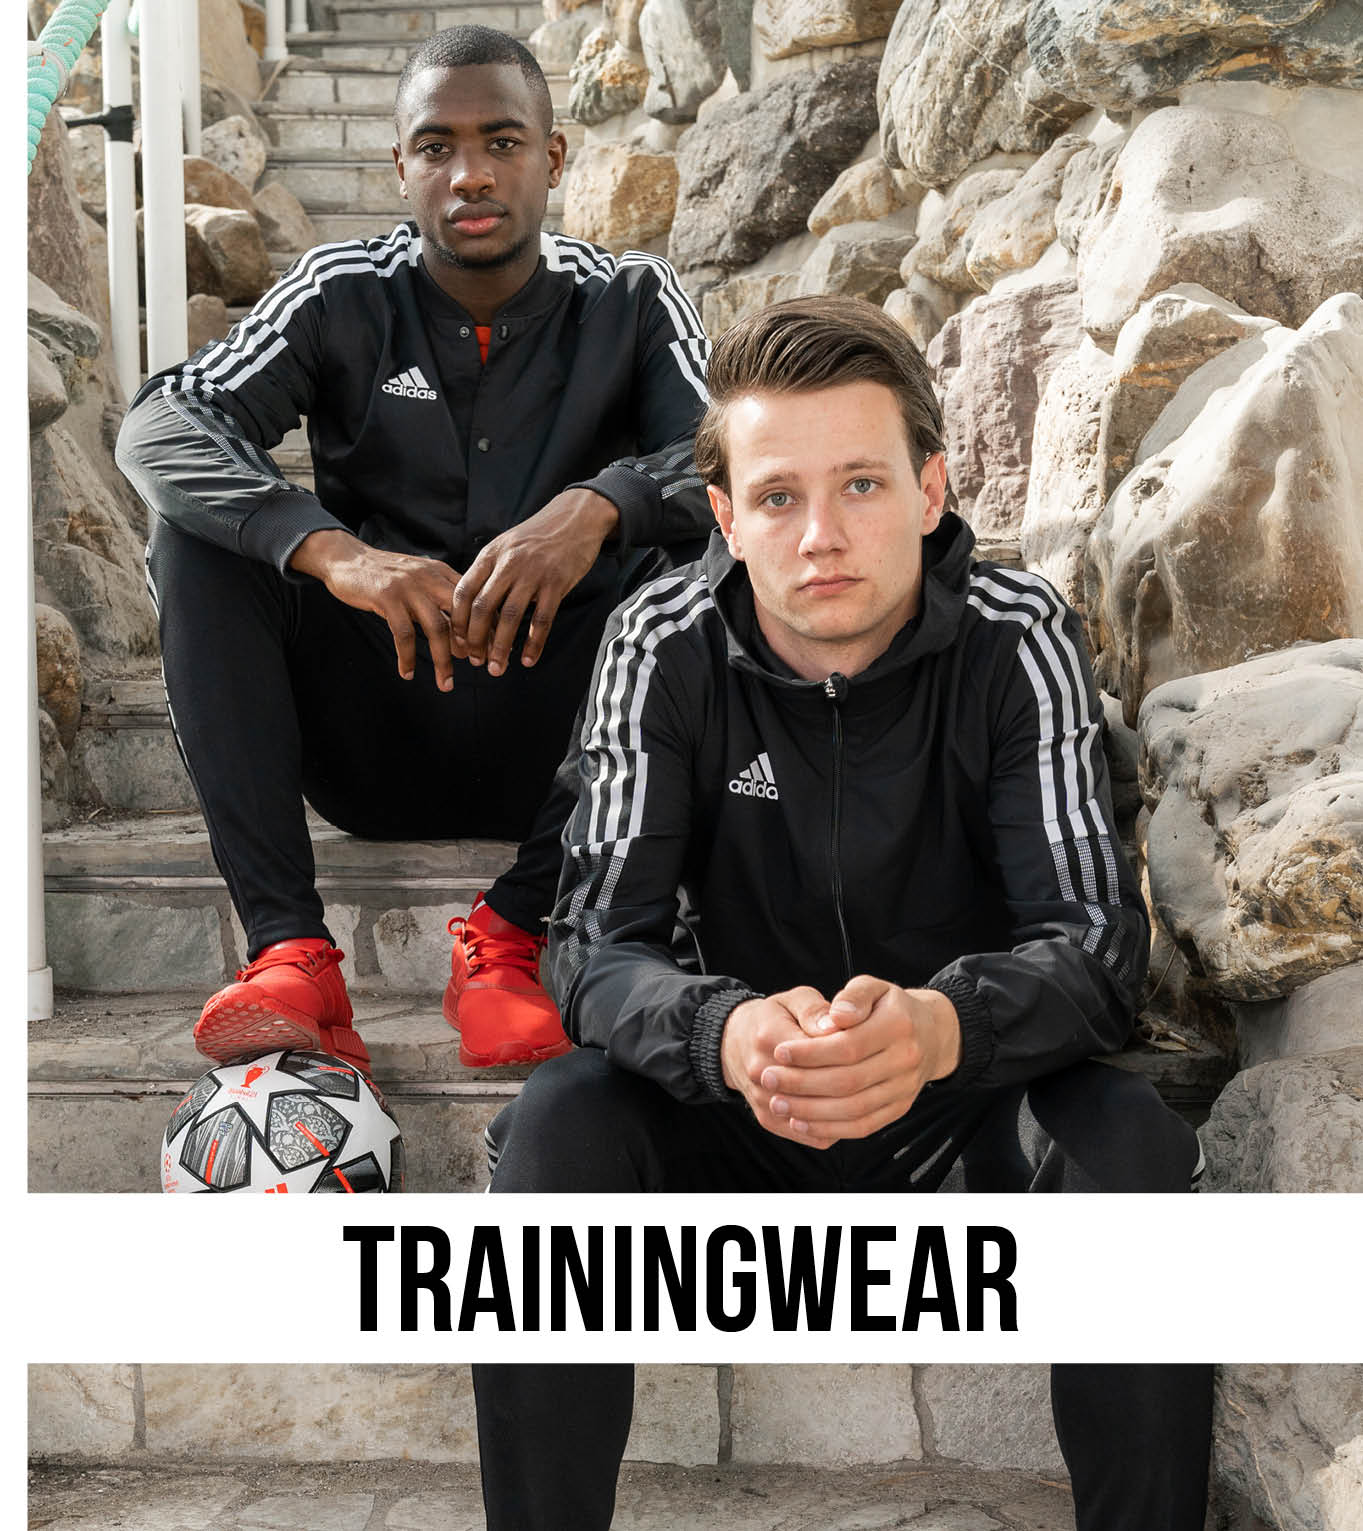 Trainingwear